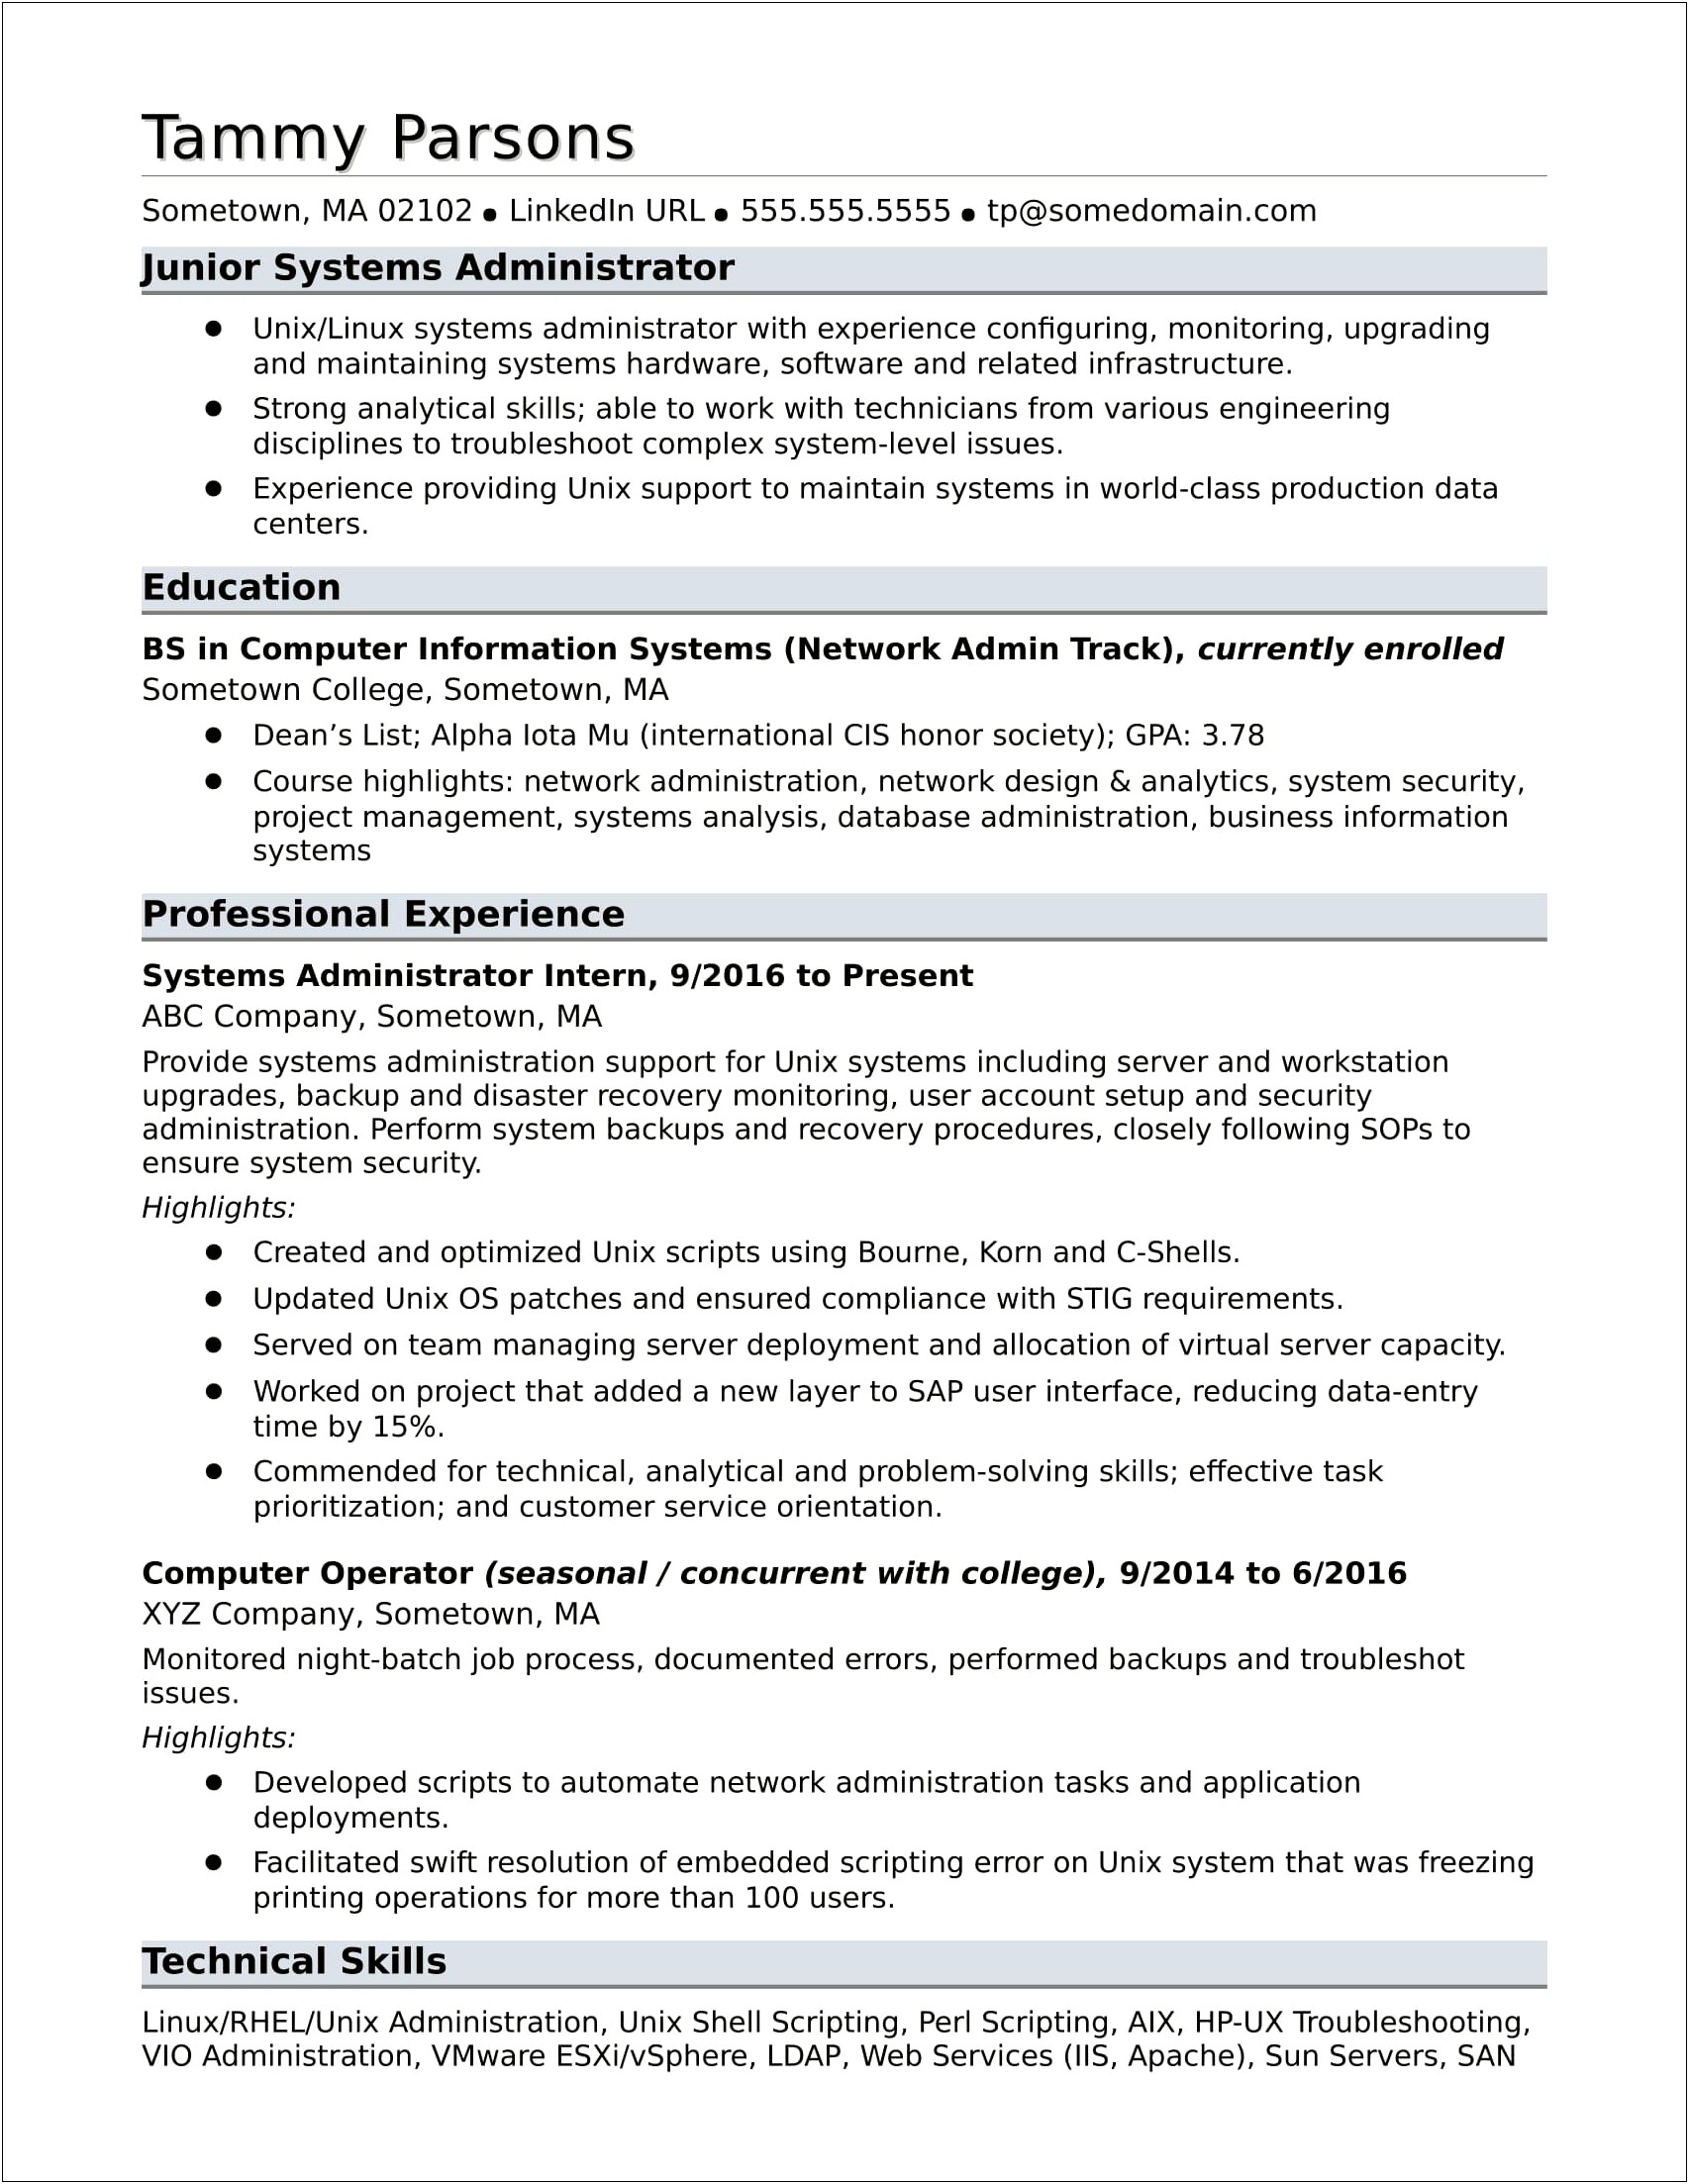 Resume Writing For Data Center Jobs